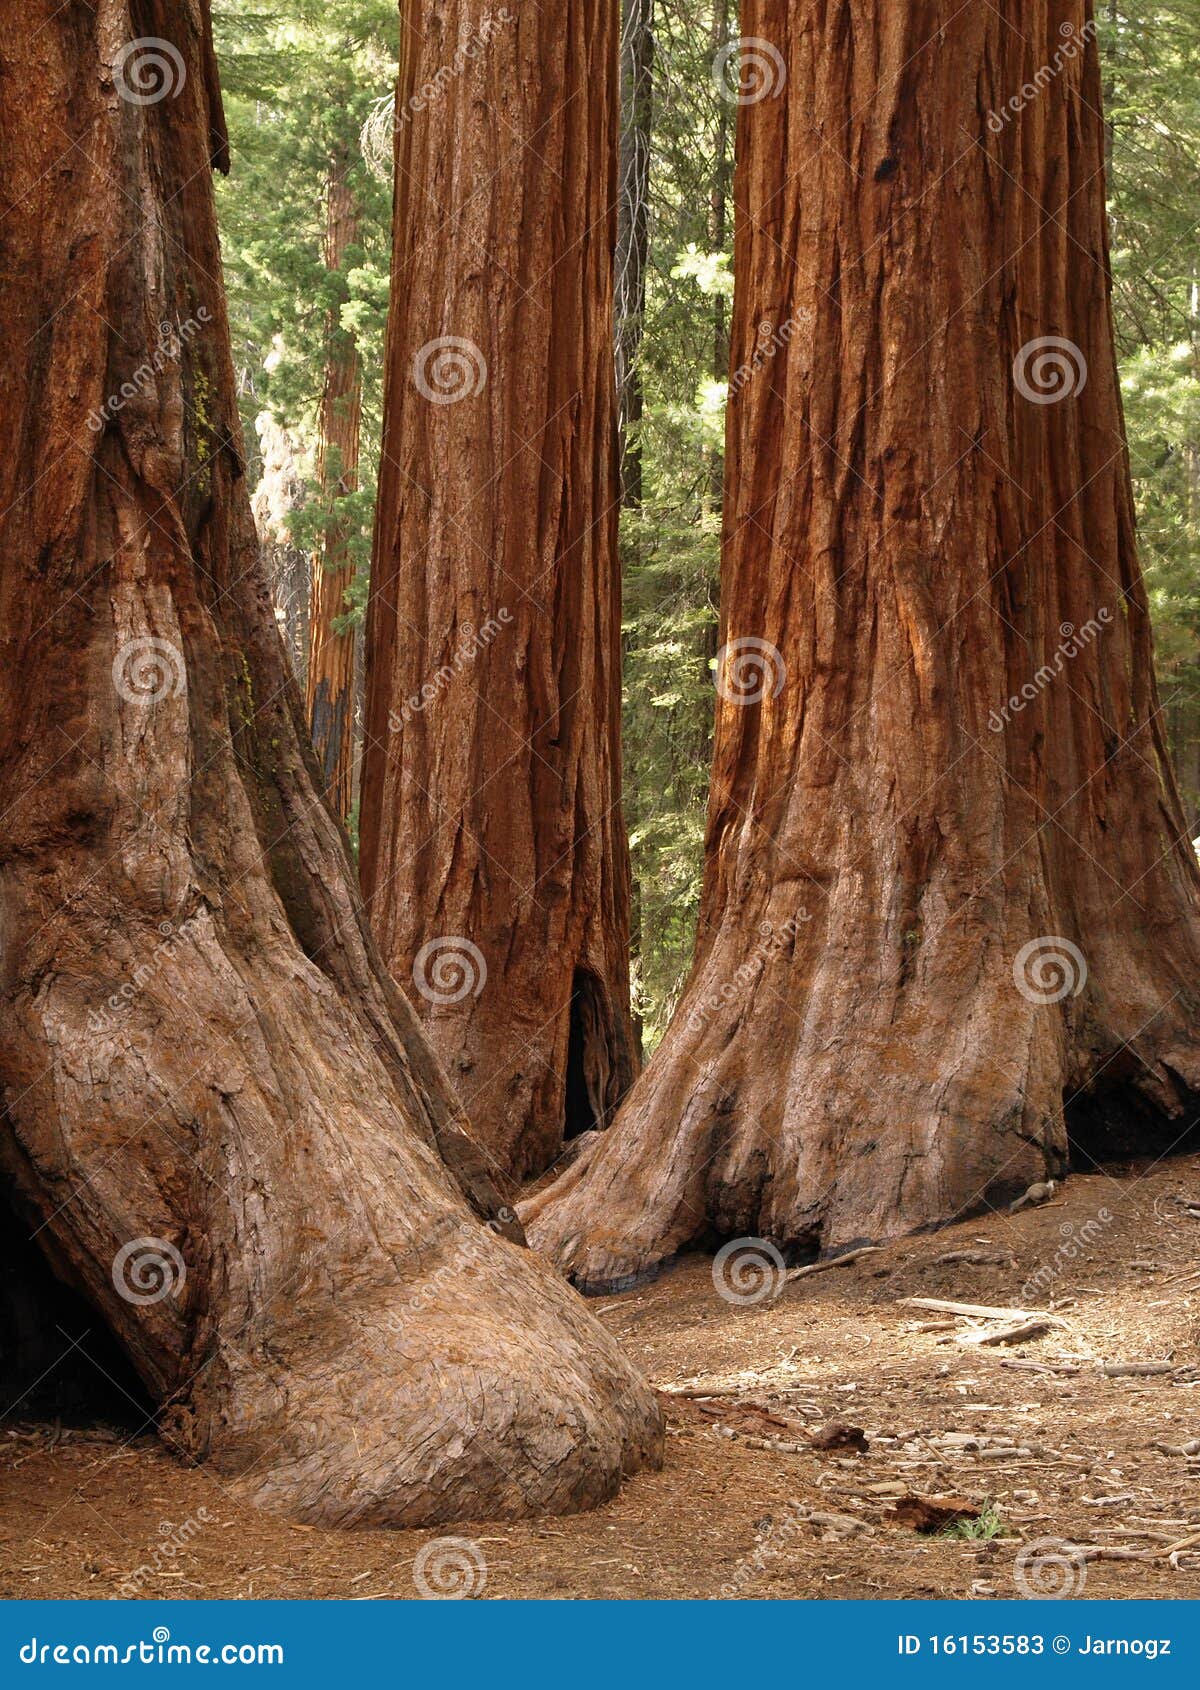 mariposa grove redwoods